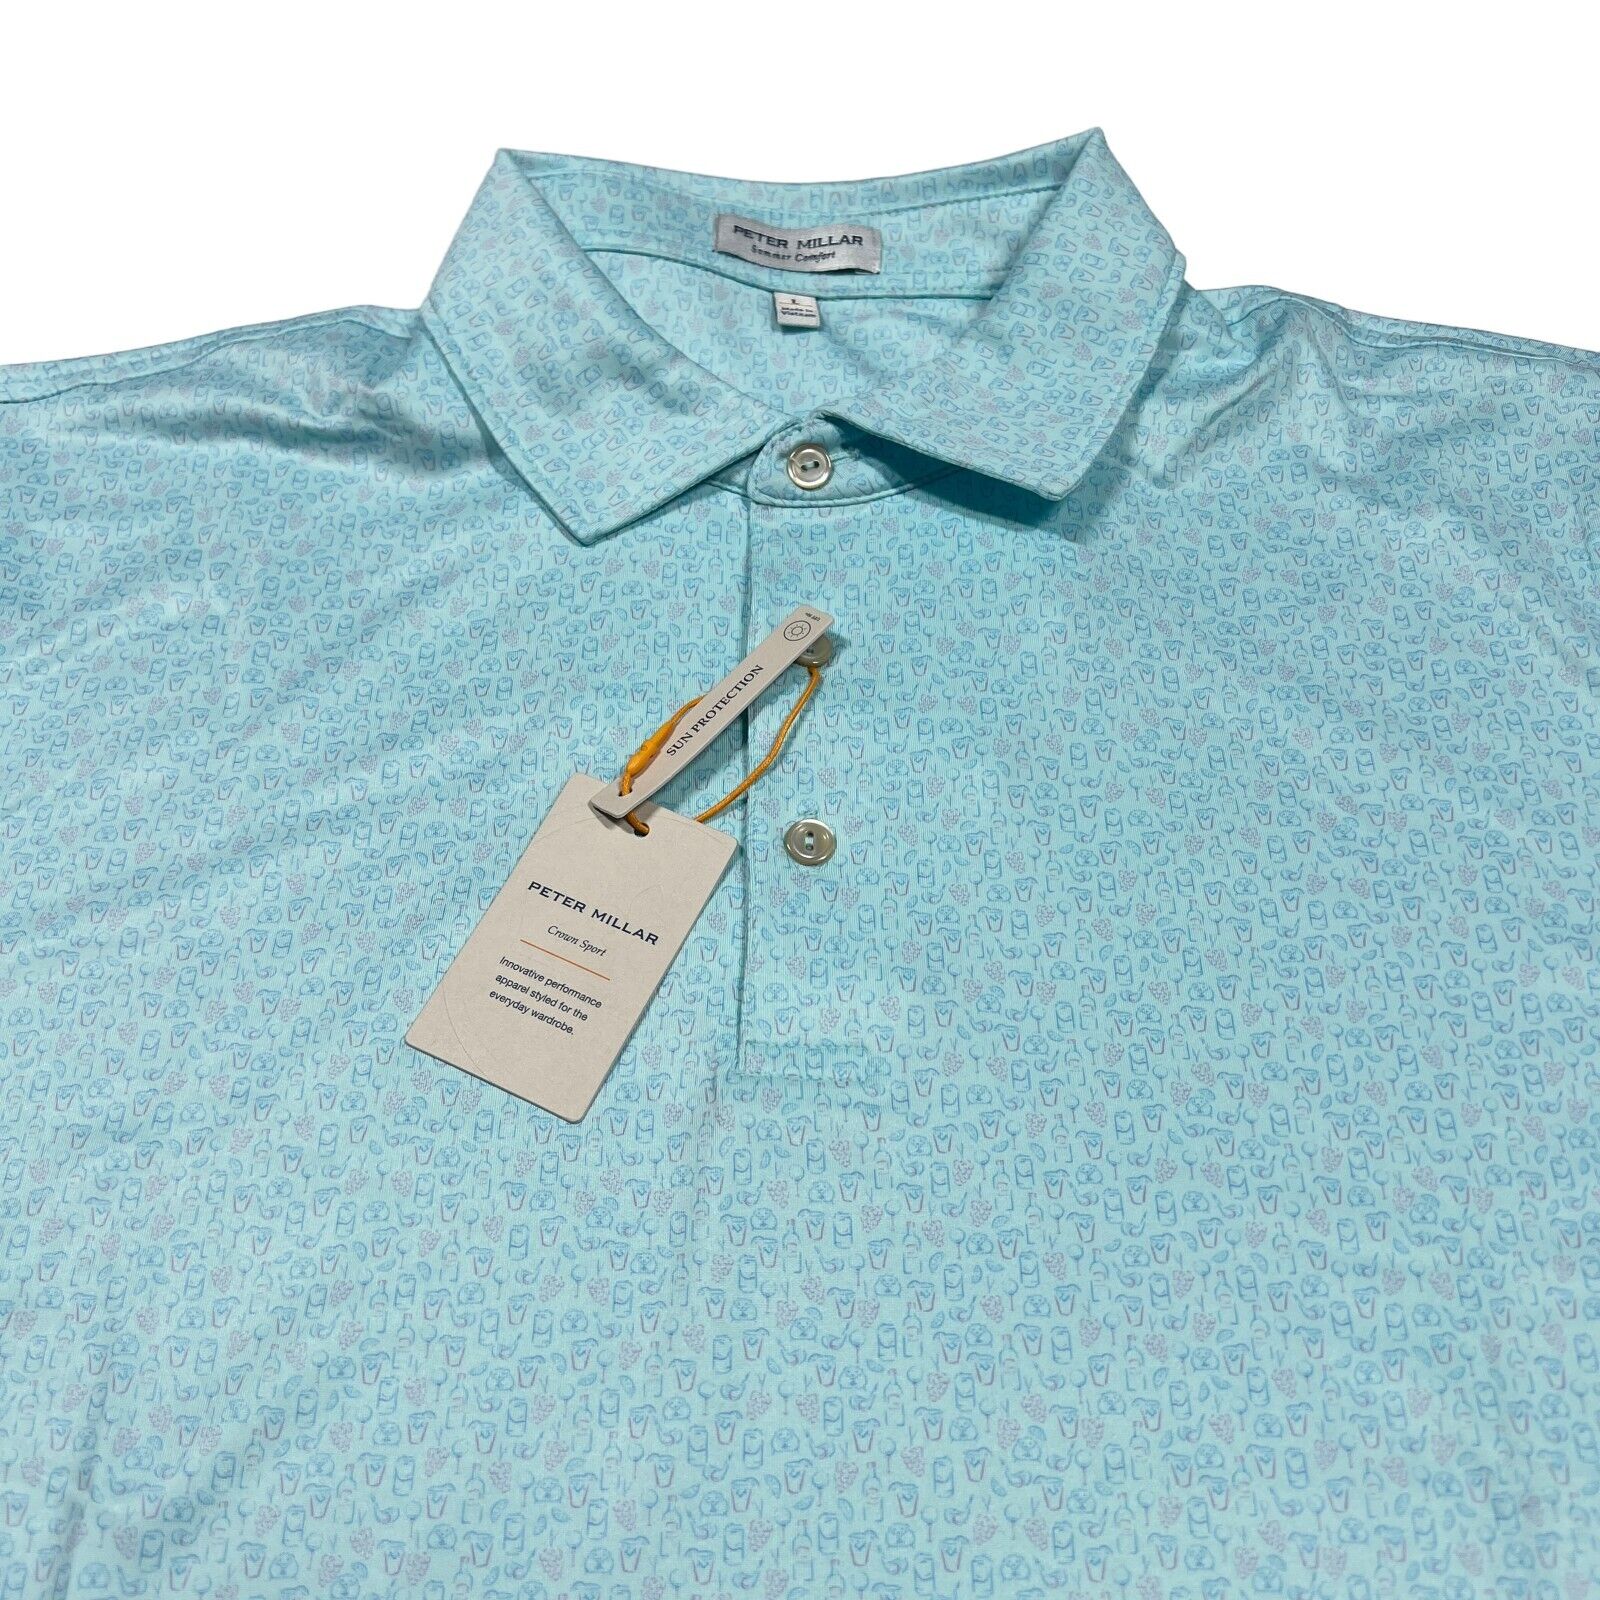 Peter Millar Polo Shirt XL Summer Comfort Dazed Green Print Short Sleeve